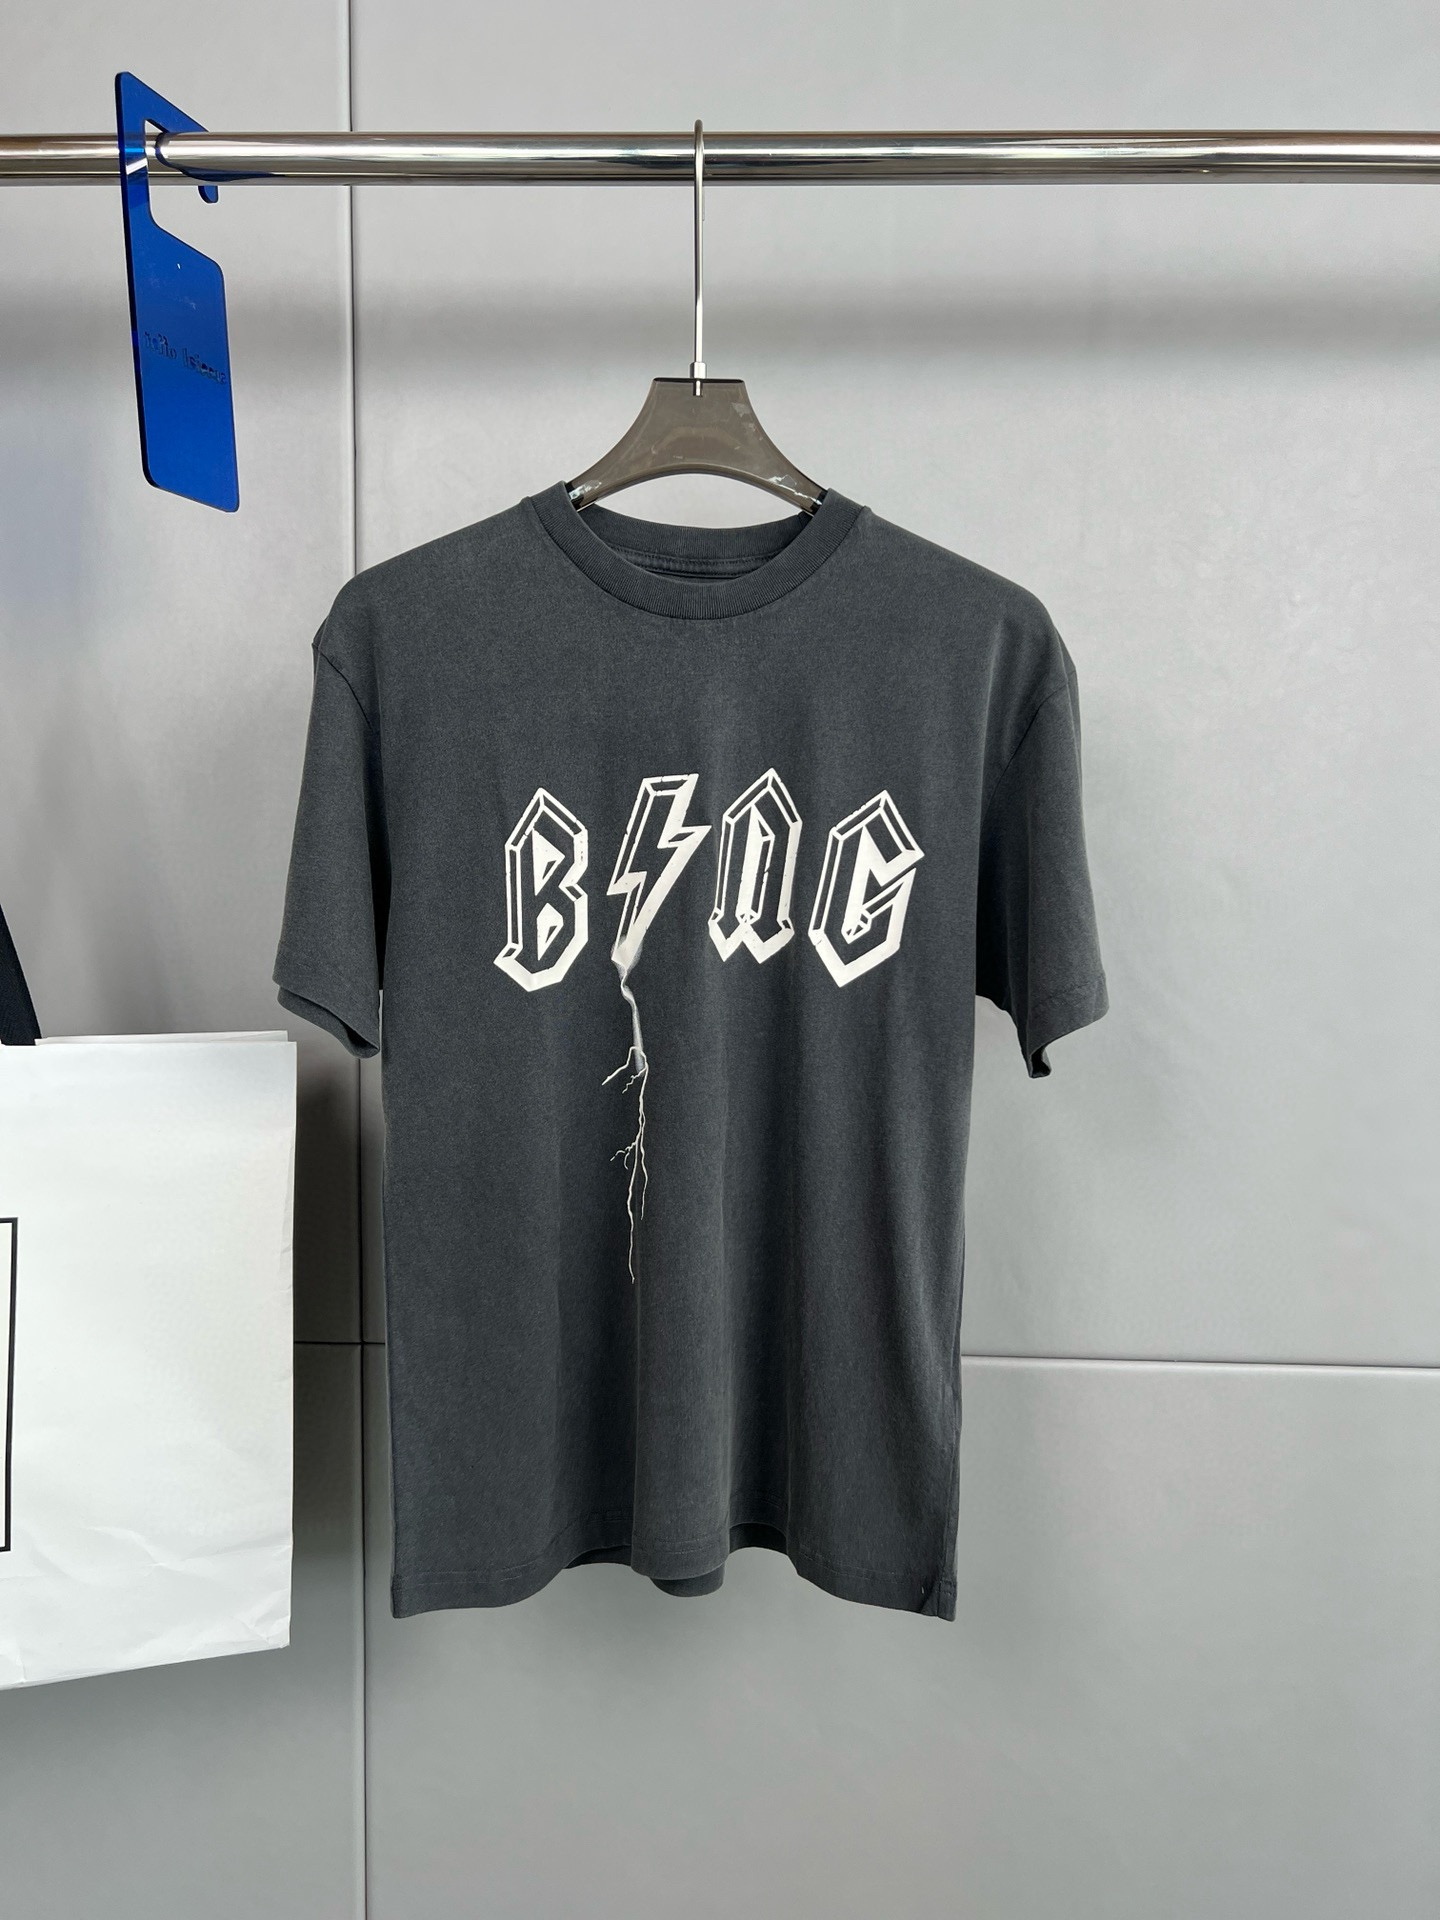 丹麦品牌 ANINE BING 新款 做旧水洗闪电⚡️字母印花图案女款短袖T恤、定制面料、衣服颜色特别有质感\n码数S  M  L